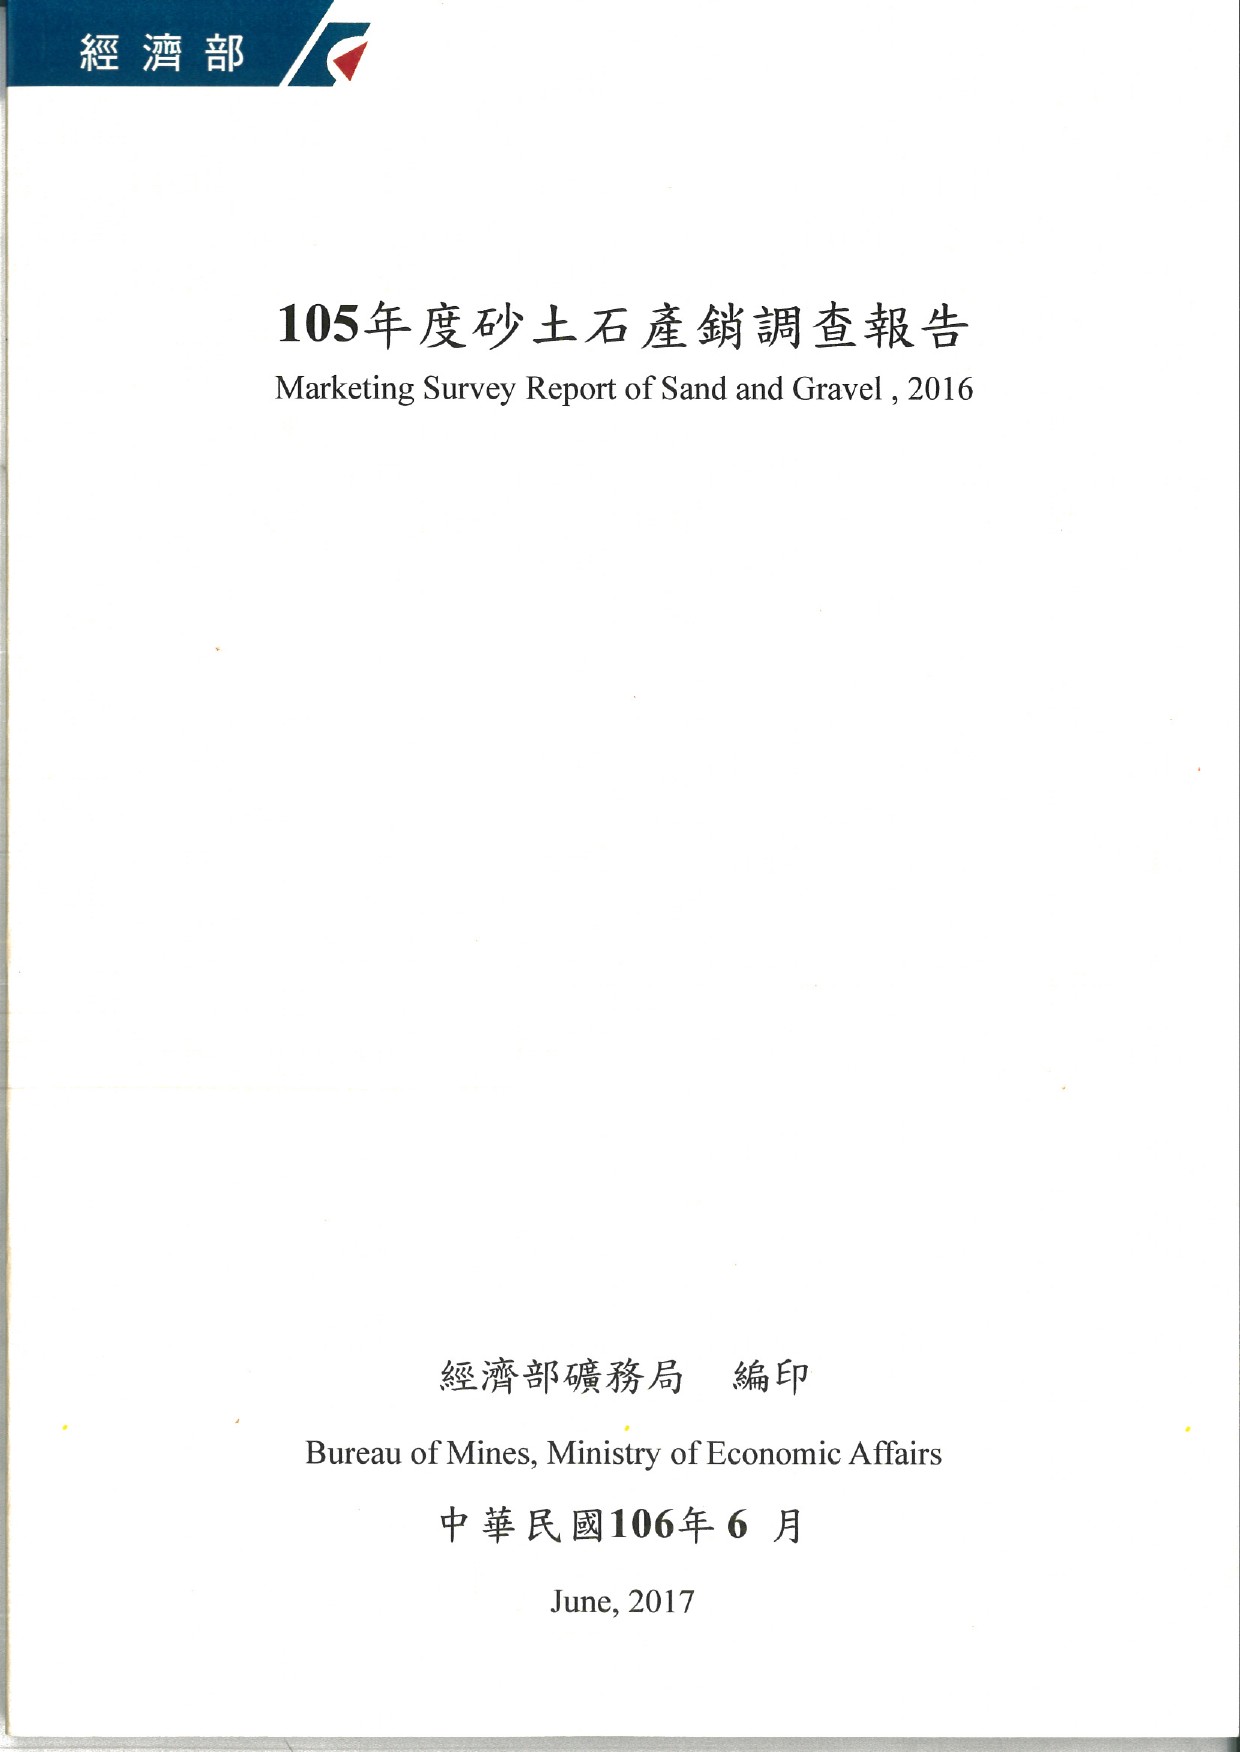 105年度砂土石產銷調查報告